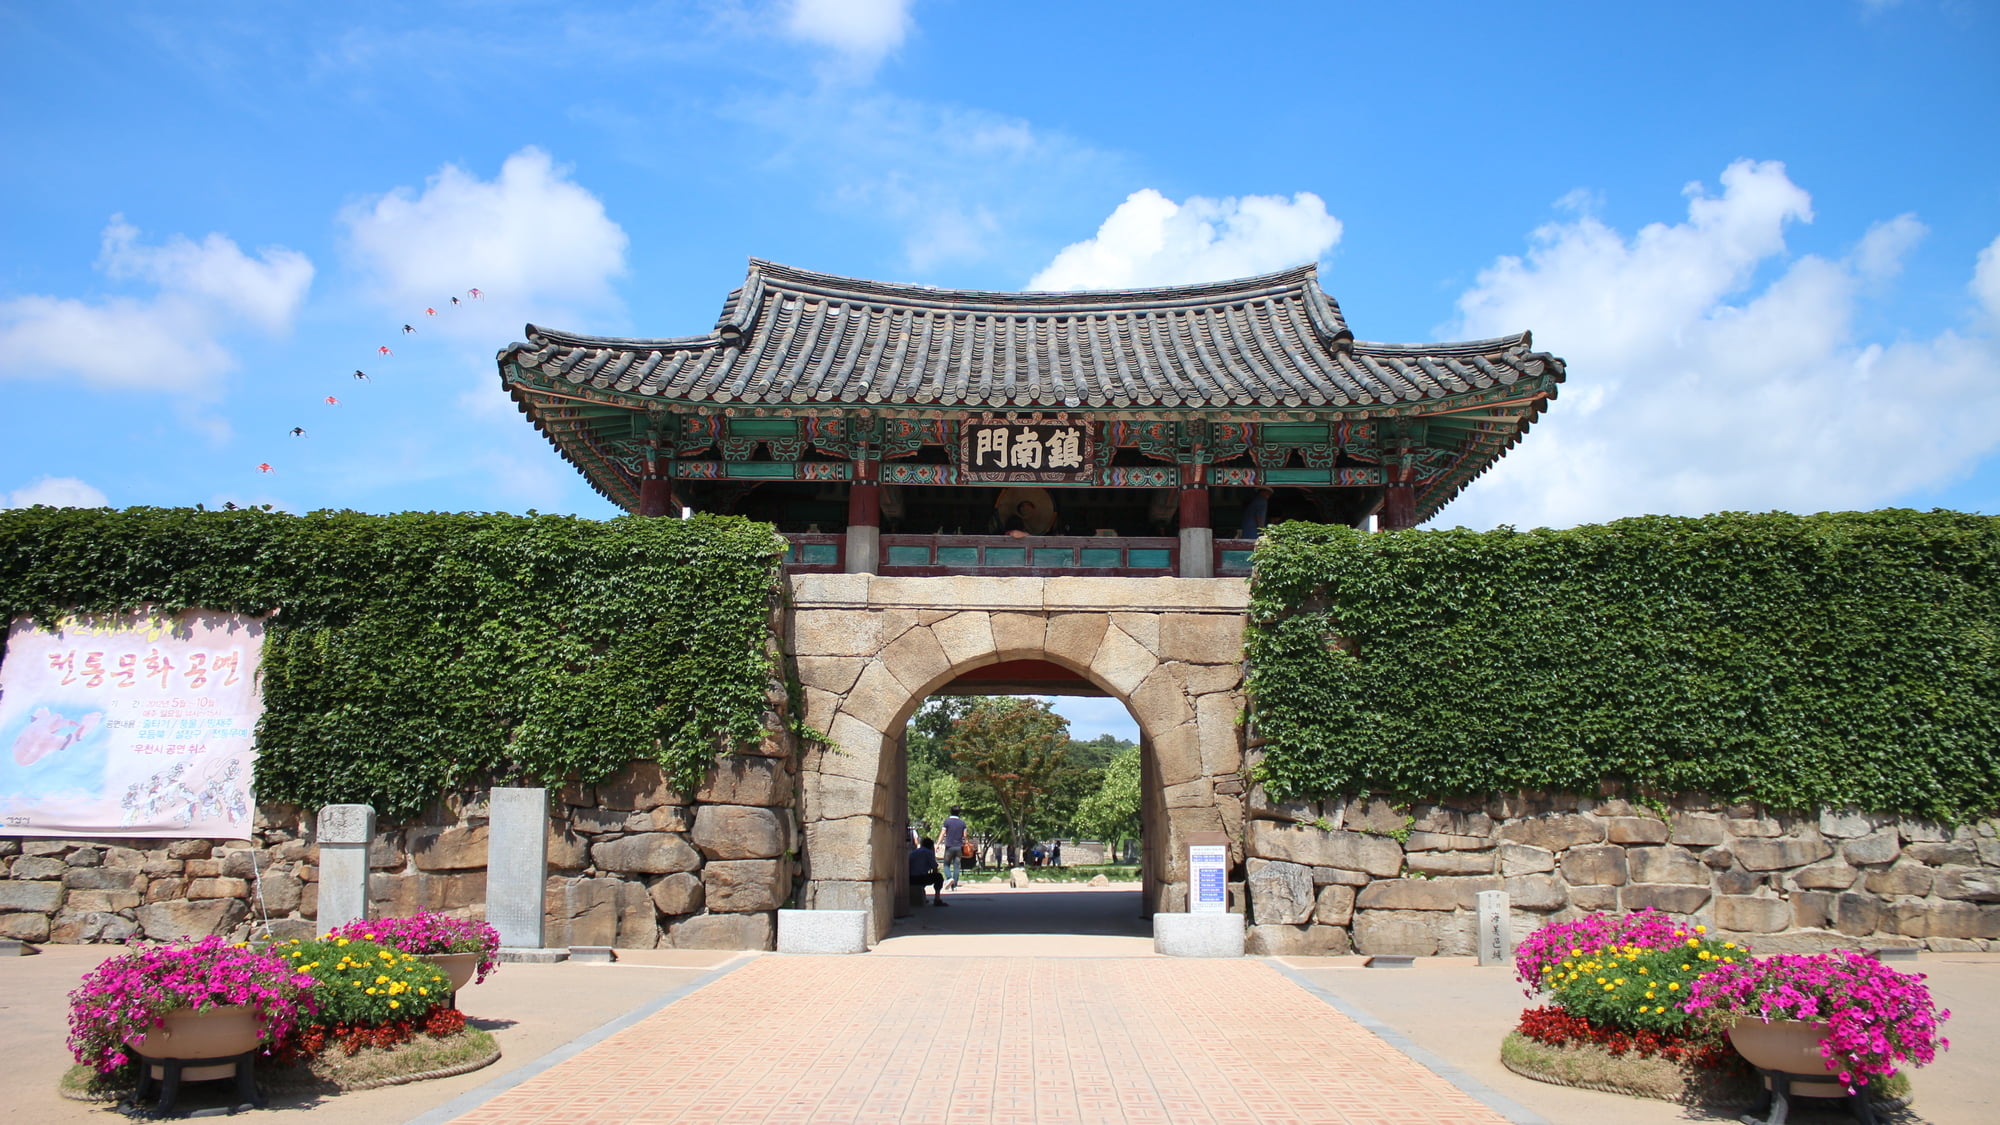 韓国 忠清南道 チュンチョンナムド のおすすめホテル 歴史や温泉が楽しめるエリア Skyticket 観光ガイド